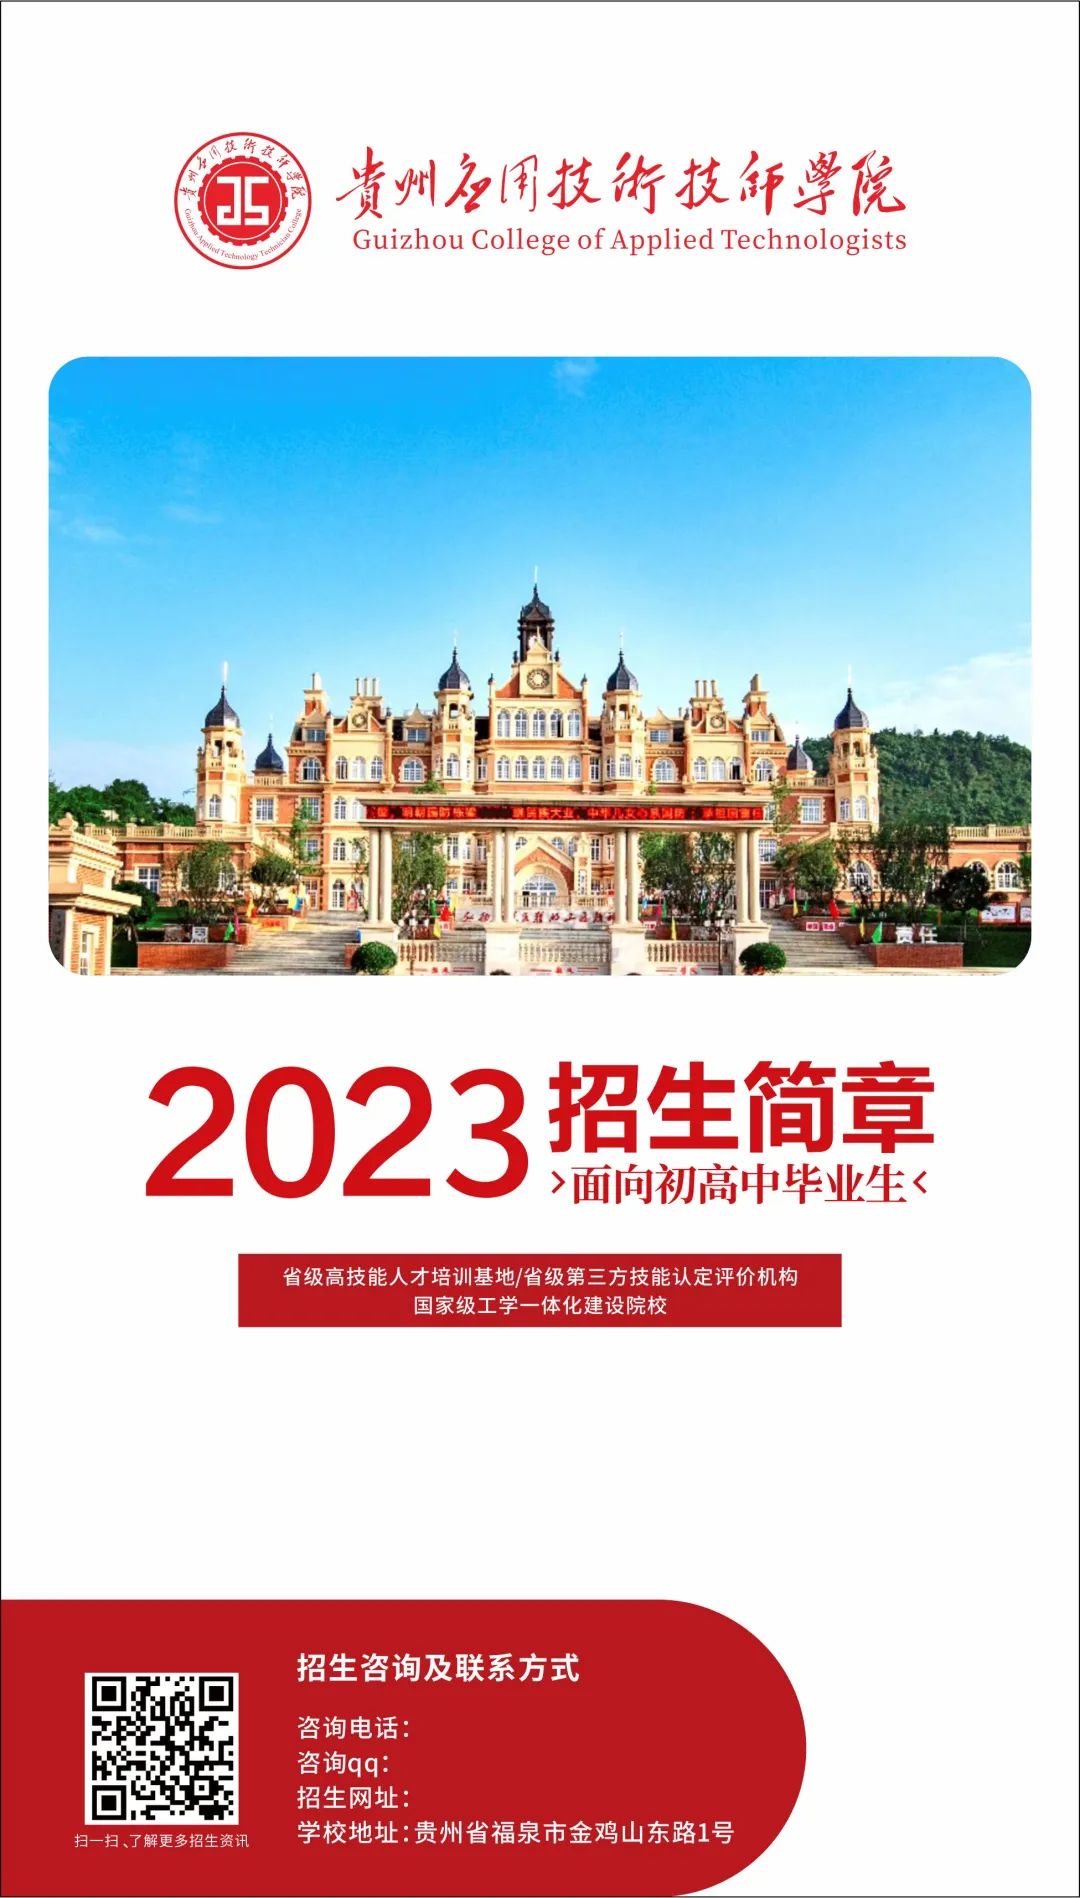 贵州应用技术技师学院2023年招生简章